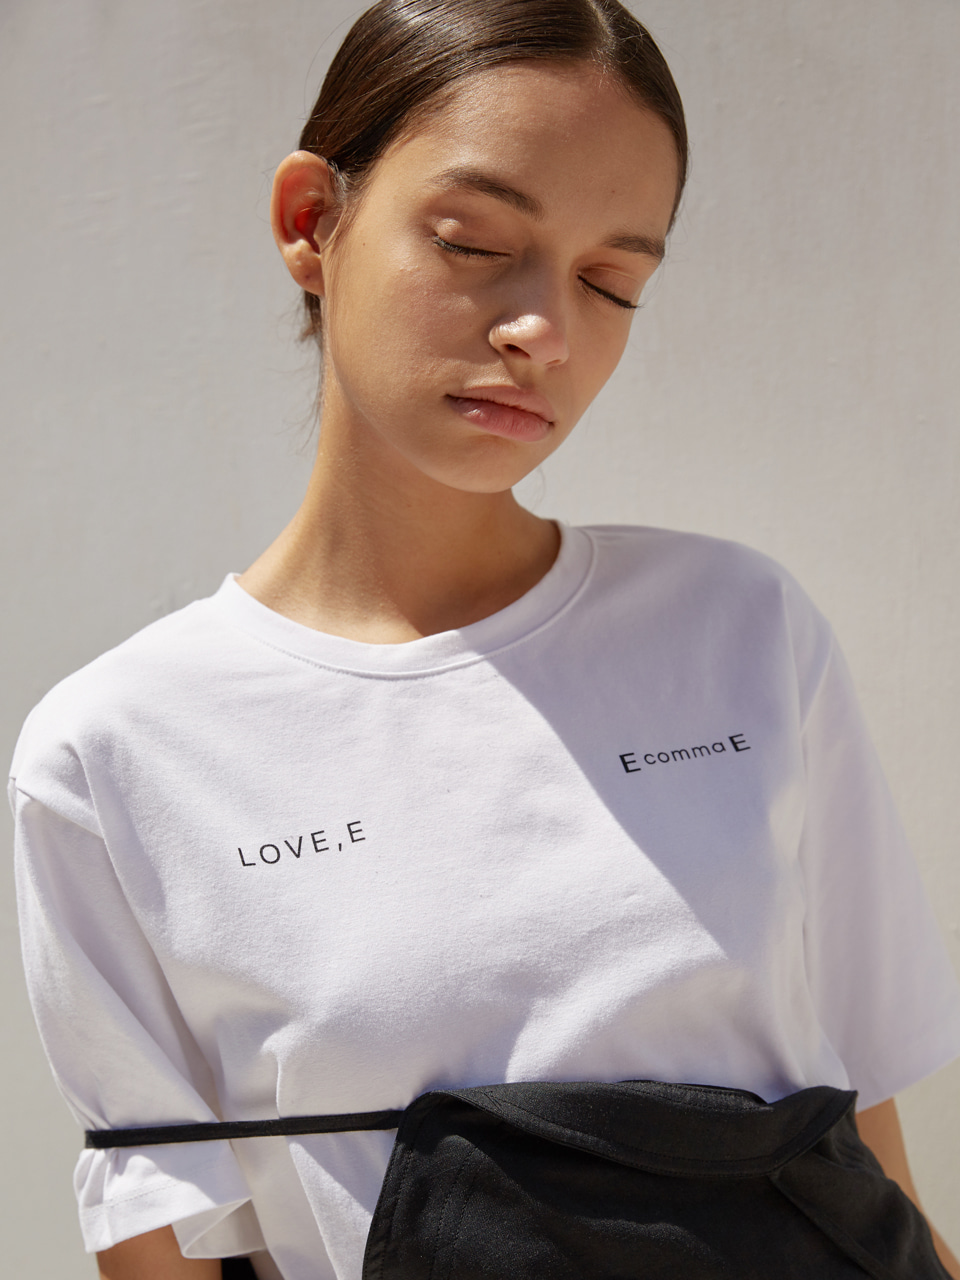 LOVE,E t-shirt (white)